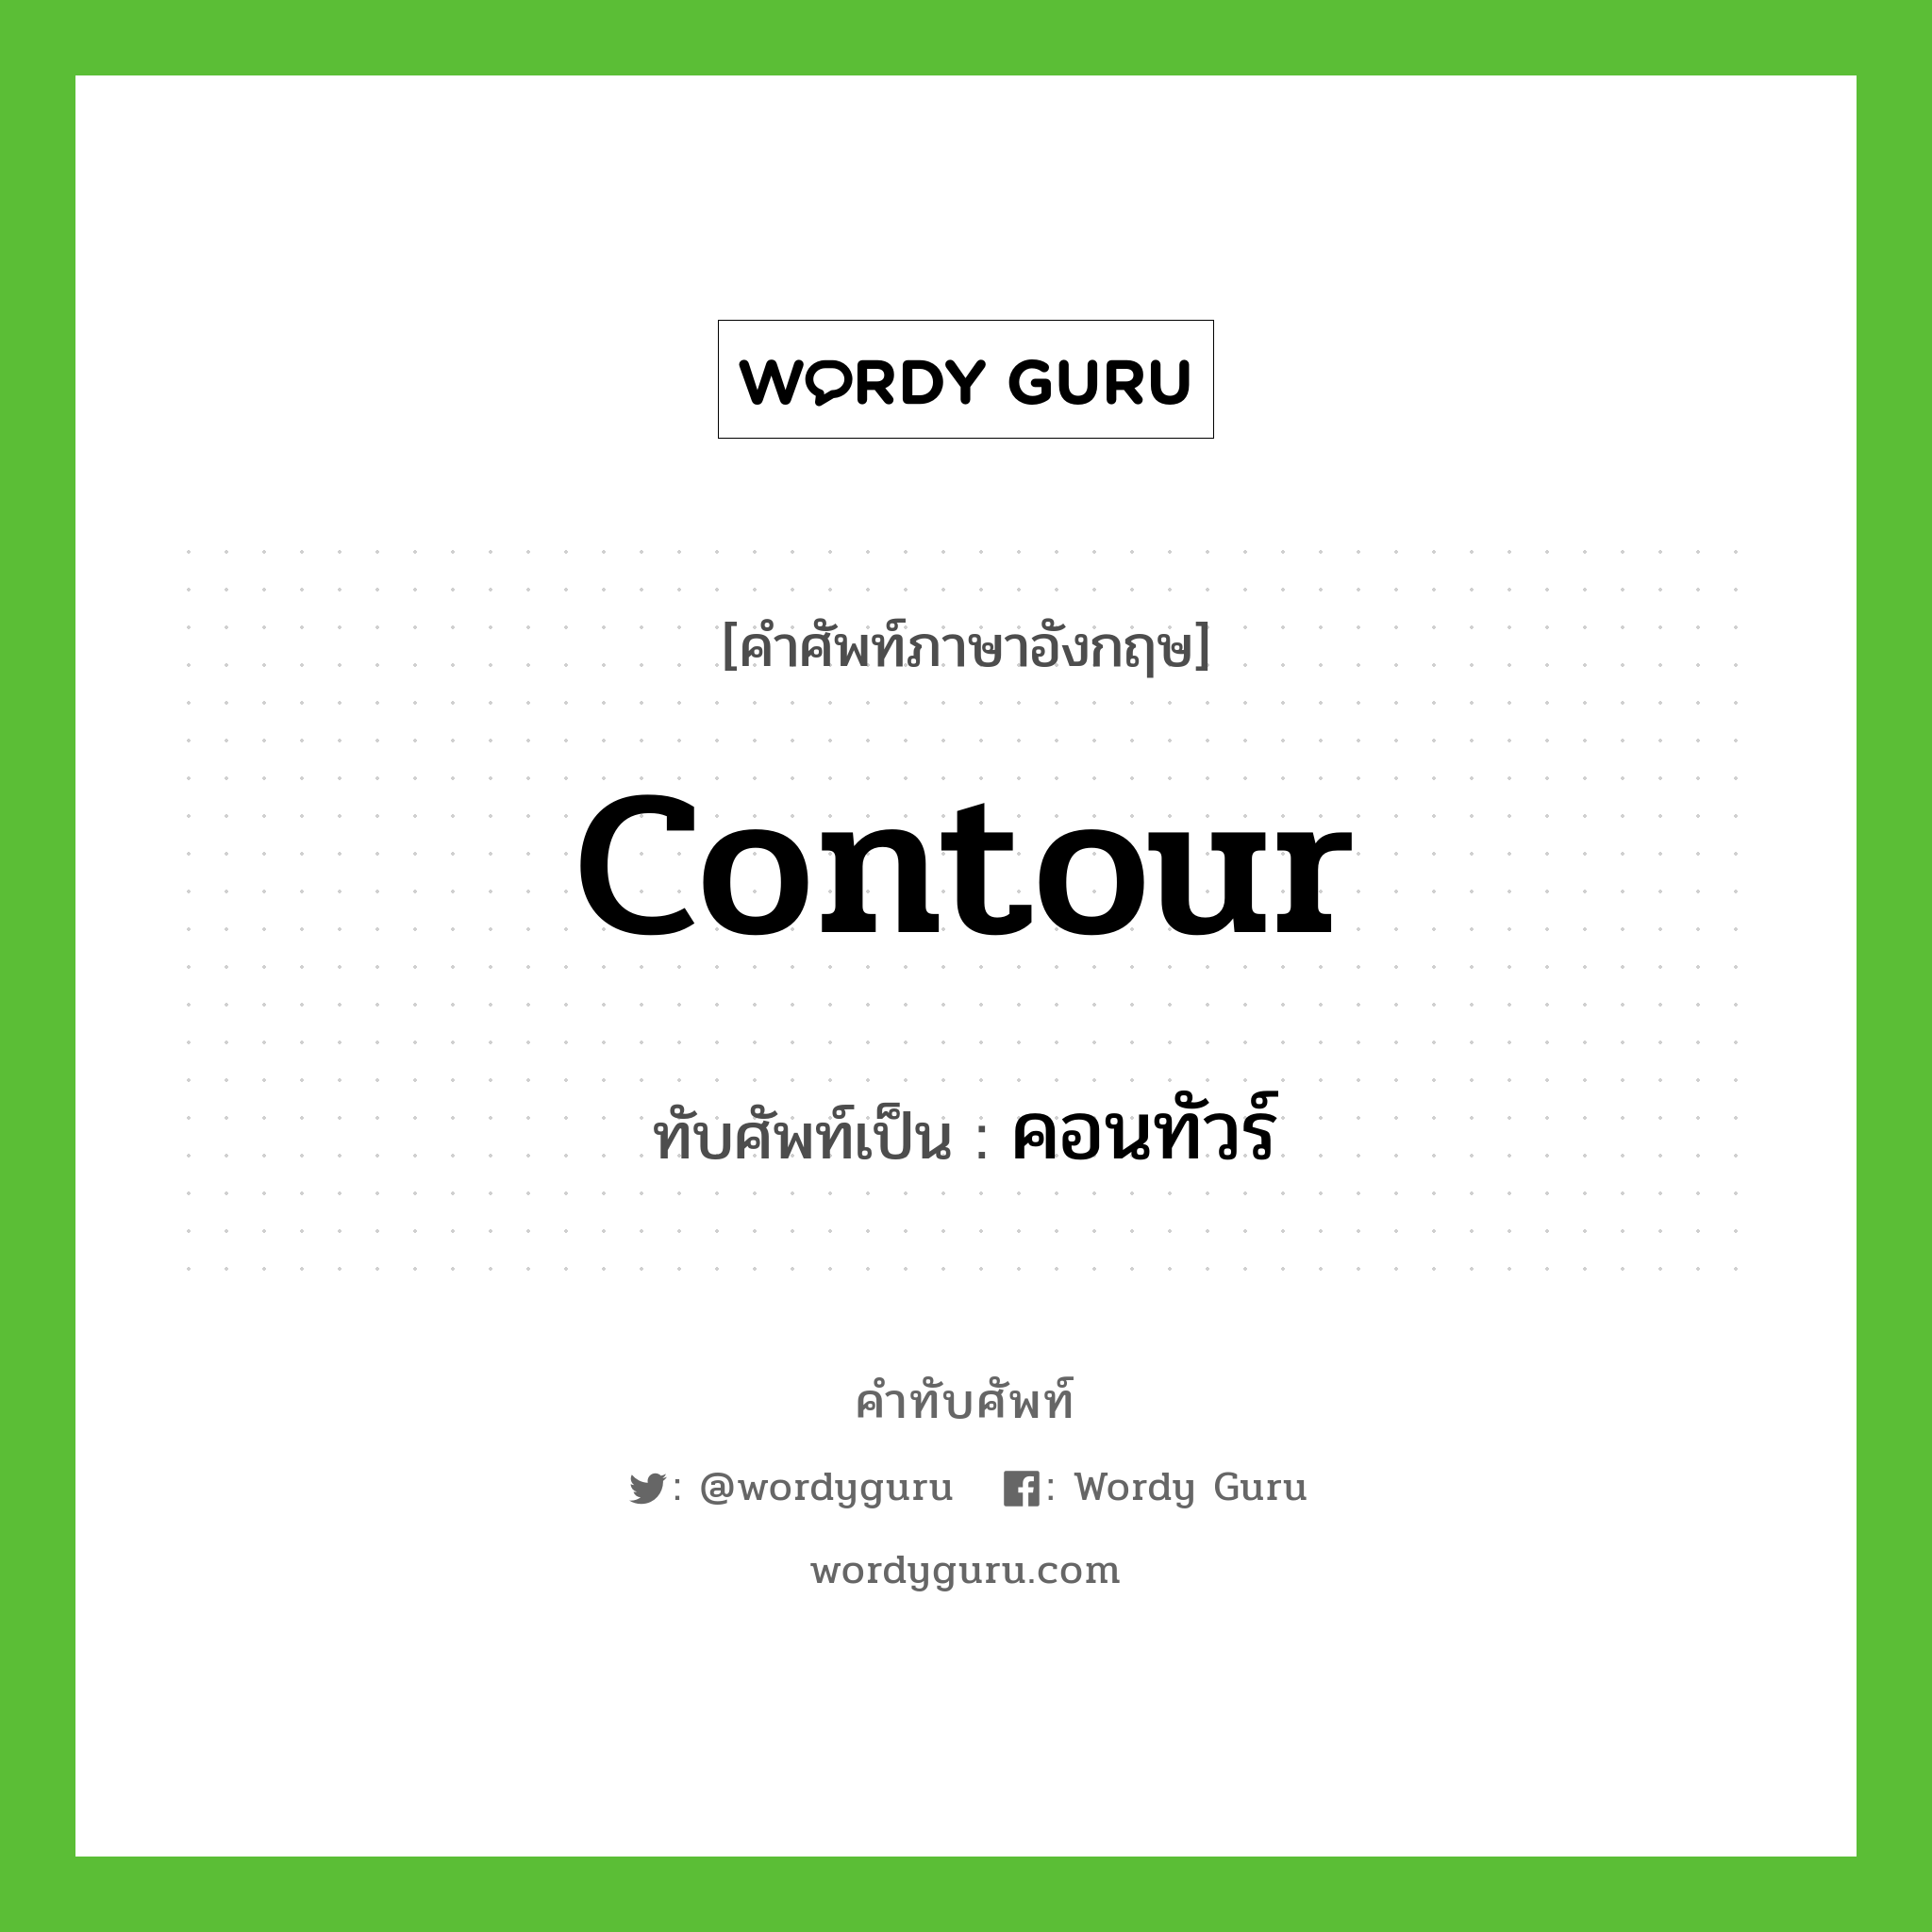 contour เขียนเป็นคำไทยว่าอะไร?, คำศัพท์ภาษาอังกฤษ contour ทับศัพท์เป็น คอนทัวร์